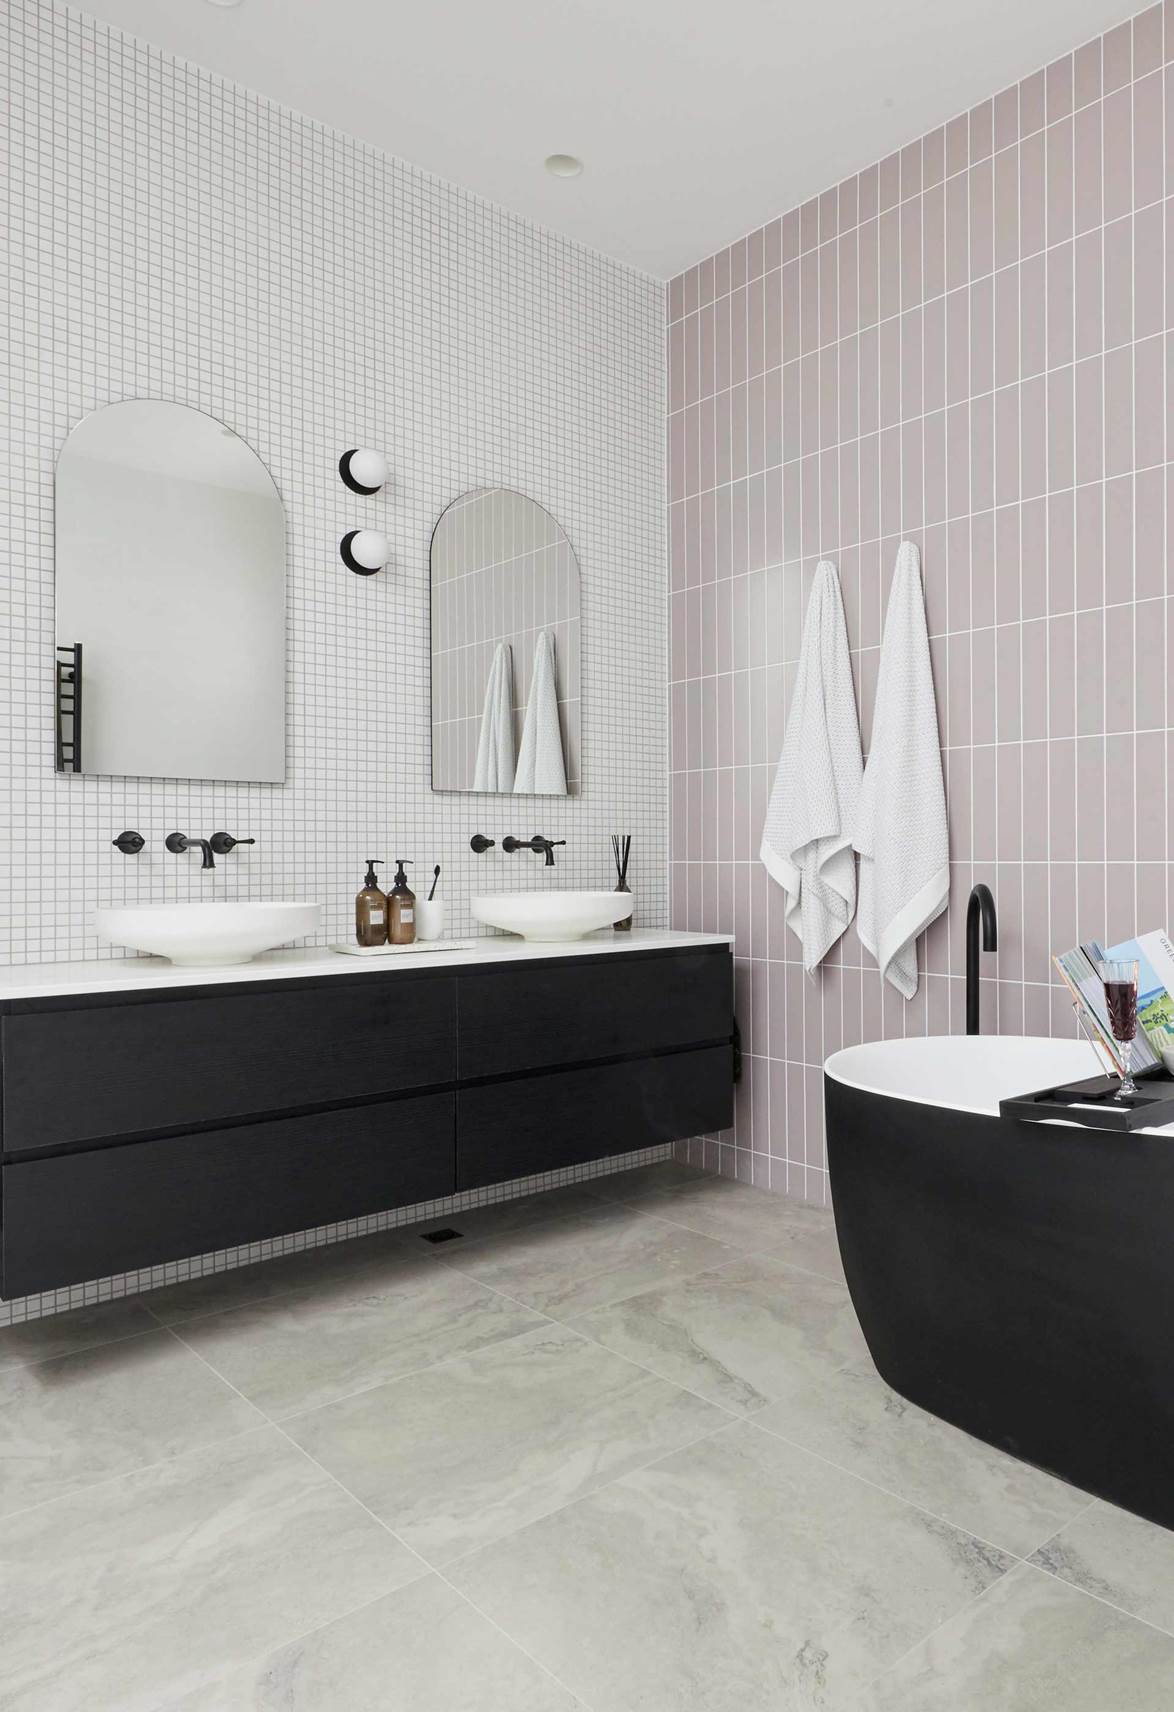 Tha hồ gom nhặt ý tưởng cho căn phòng tắm gia đình với những thiết kế đẹp miễn chê - Ảnh 7.